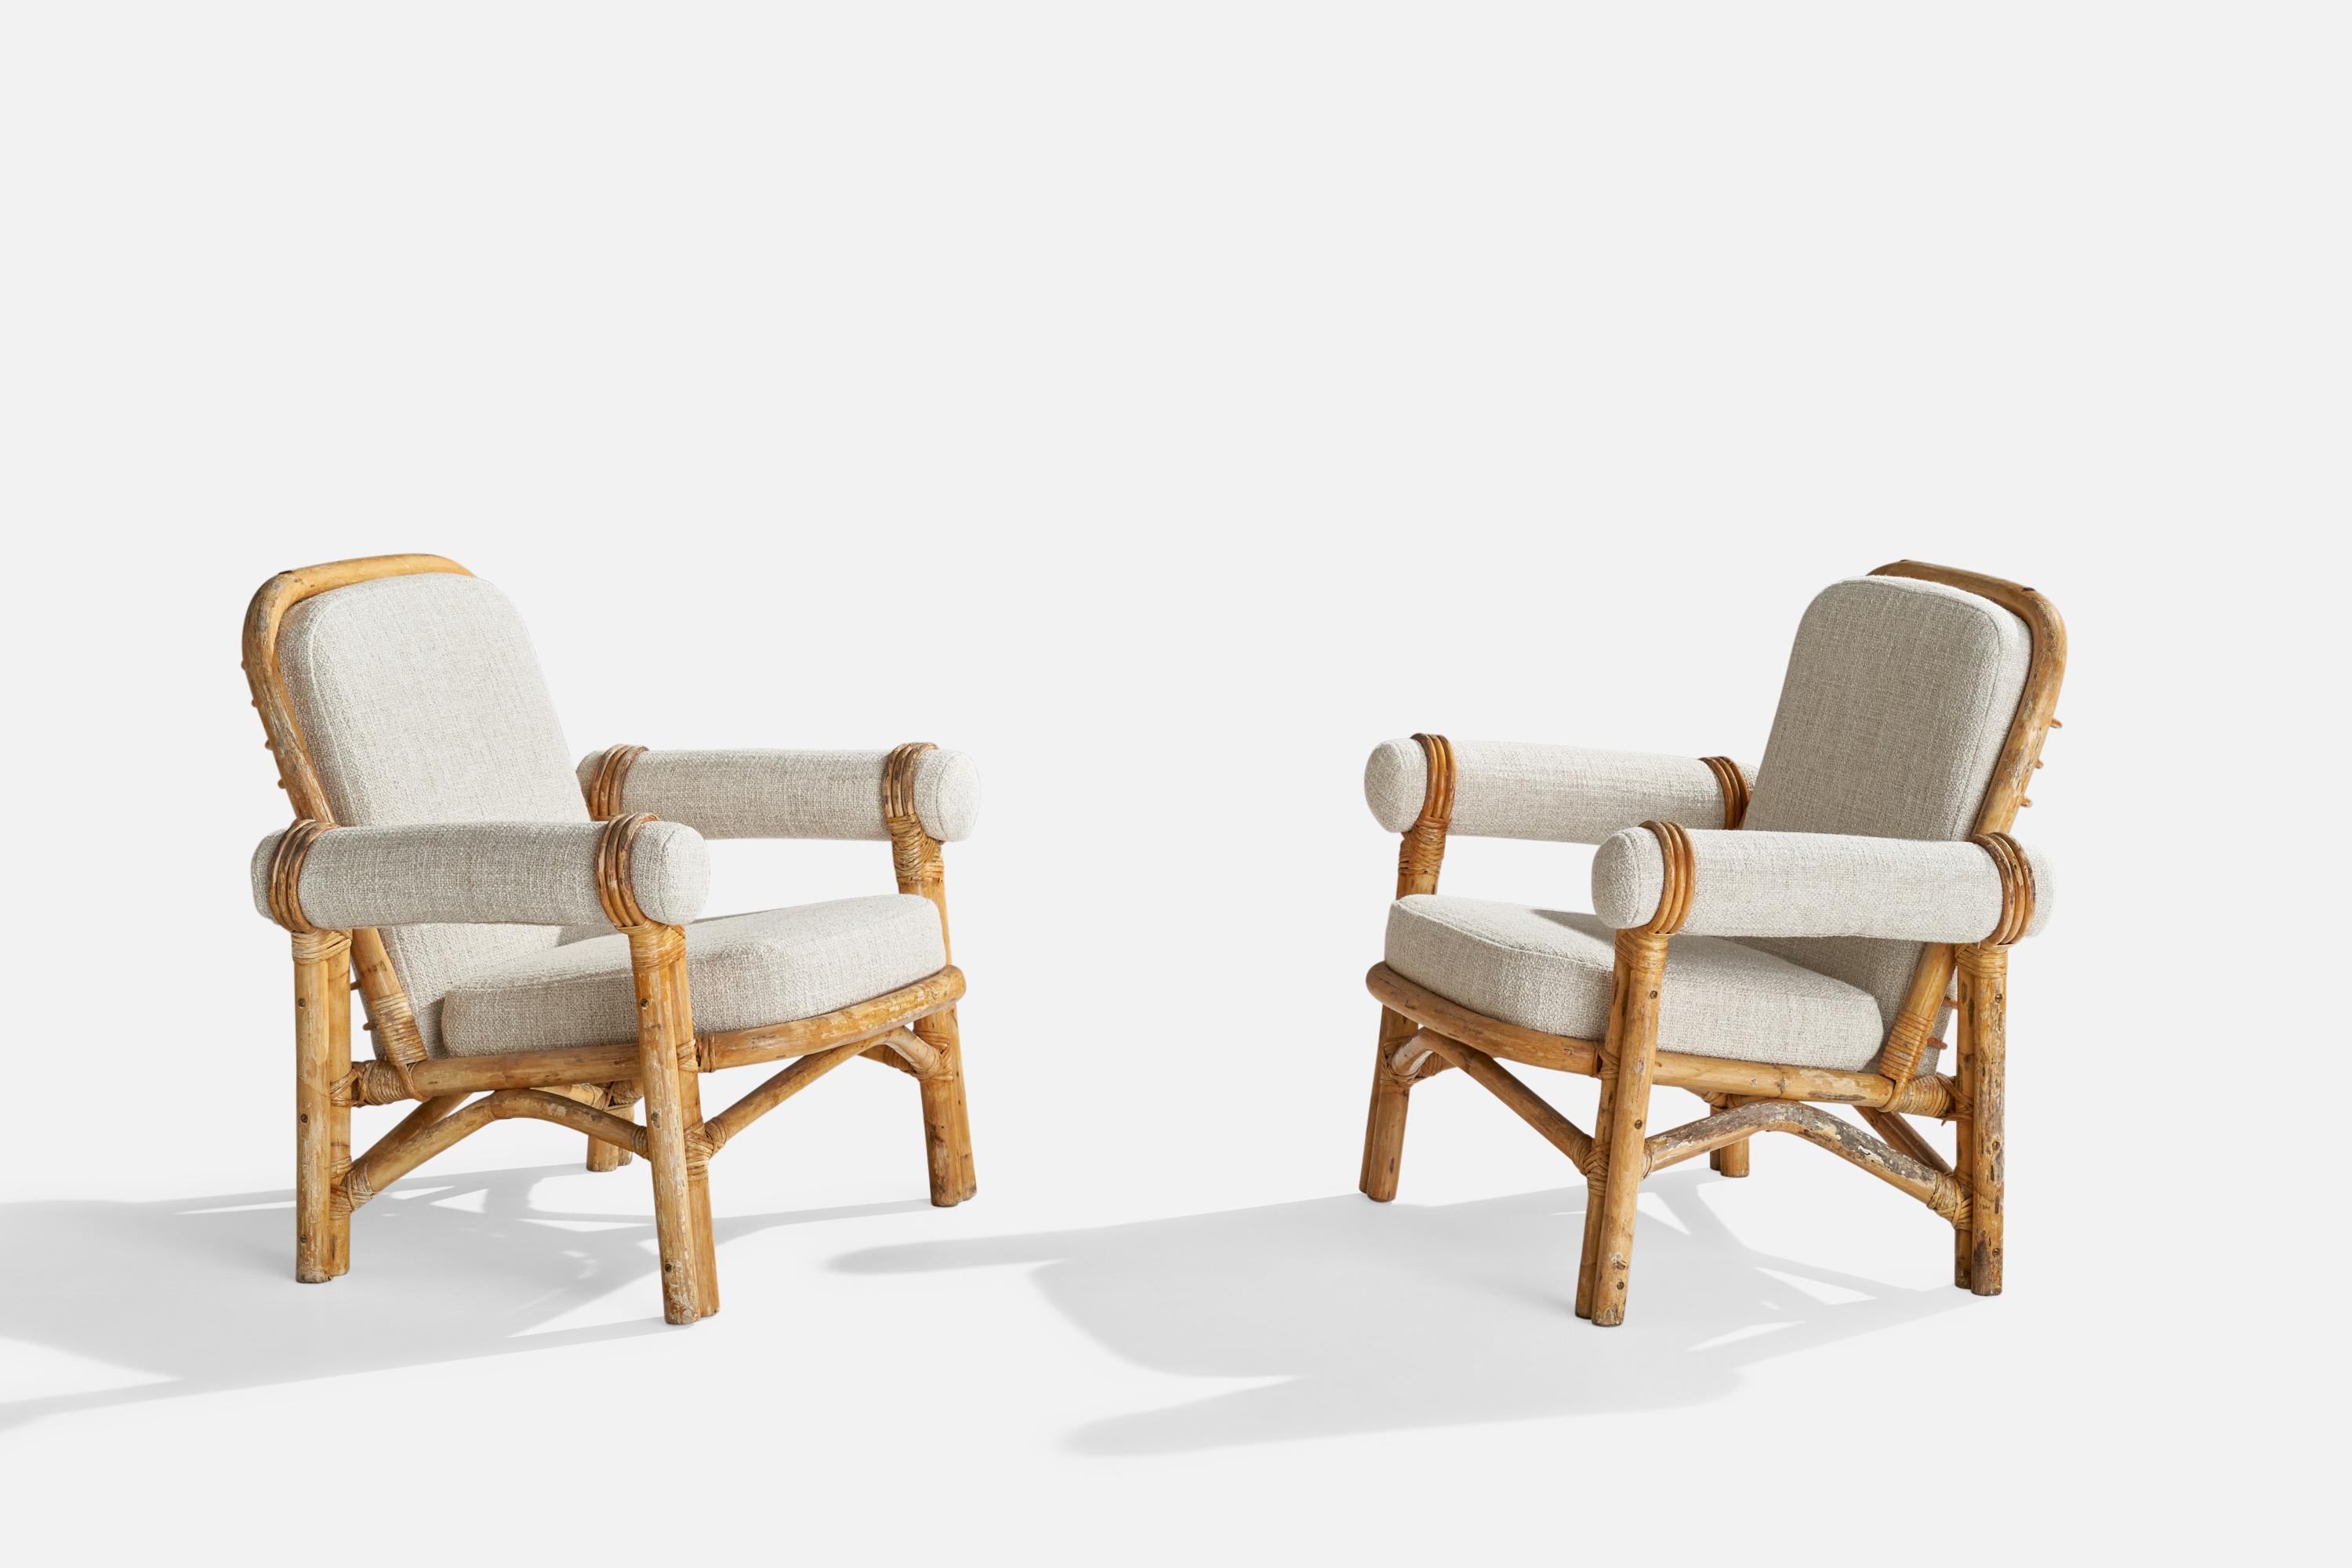 Paire de chaises longues en bambou moulé, rotin et tissu blanc cassé, probablement conçues et produites en Suède, années 1950.

Hauteur du siège : 16.75